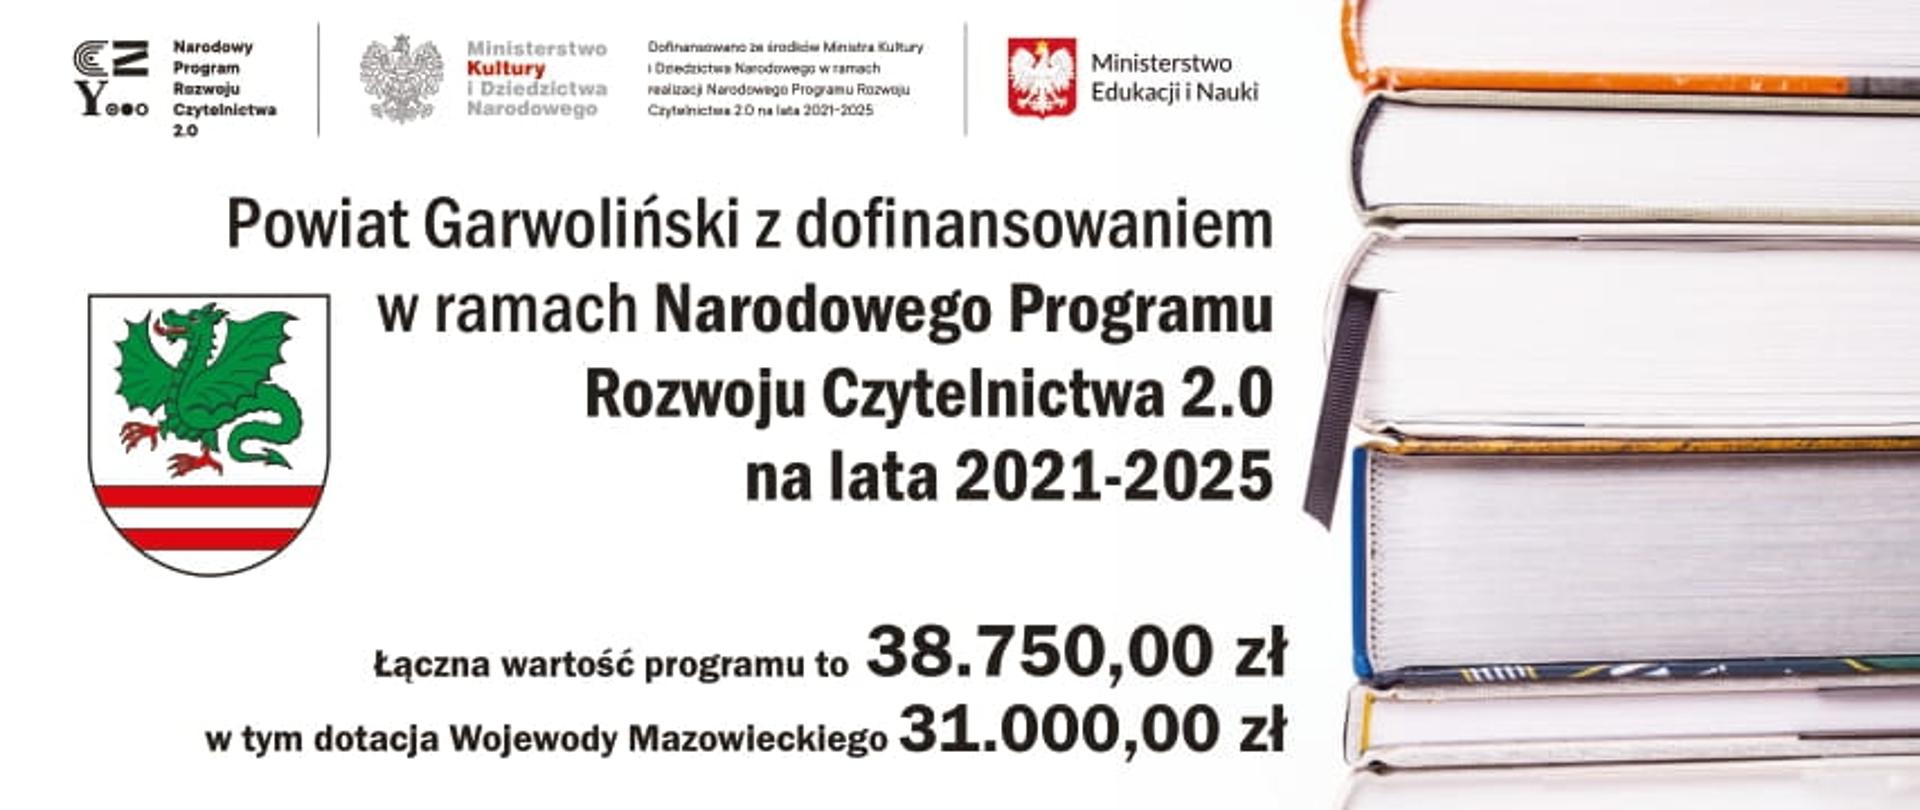 Podsumowanie Narodowego Programu Rozwoju Czytelnictwa 2.0 na lata 2021-2025 